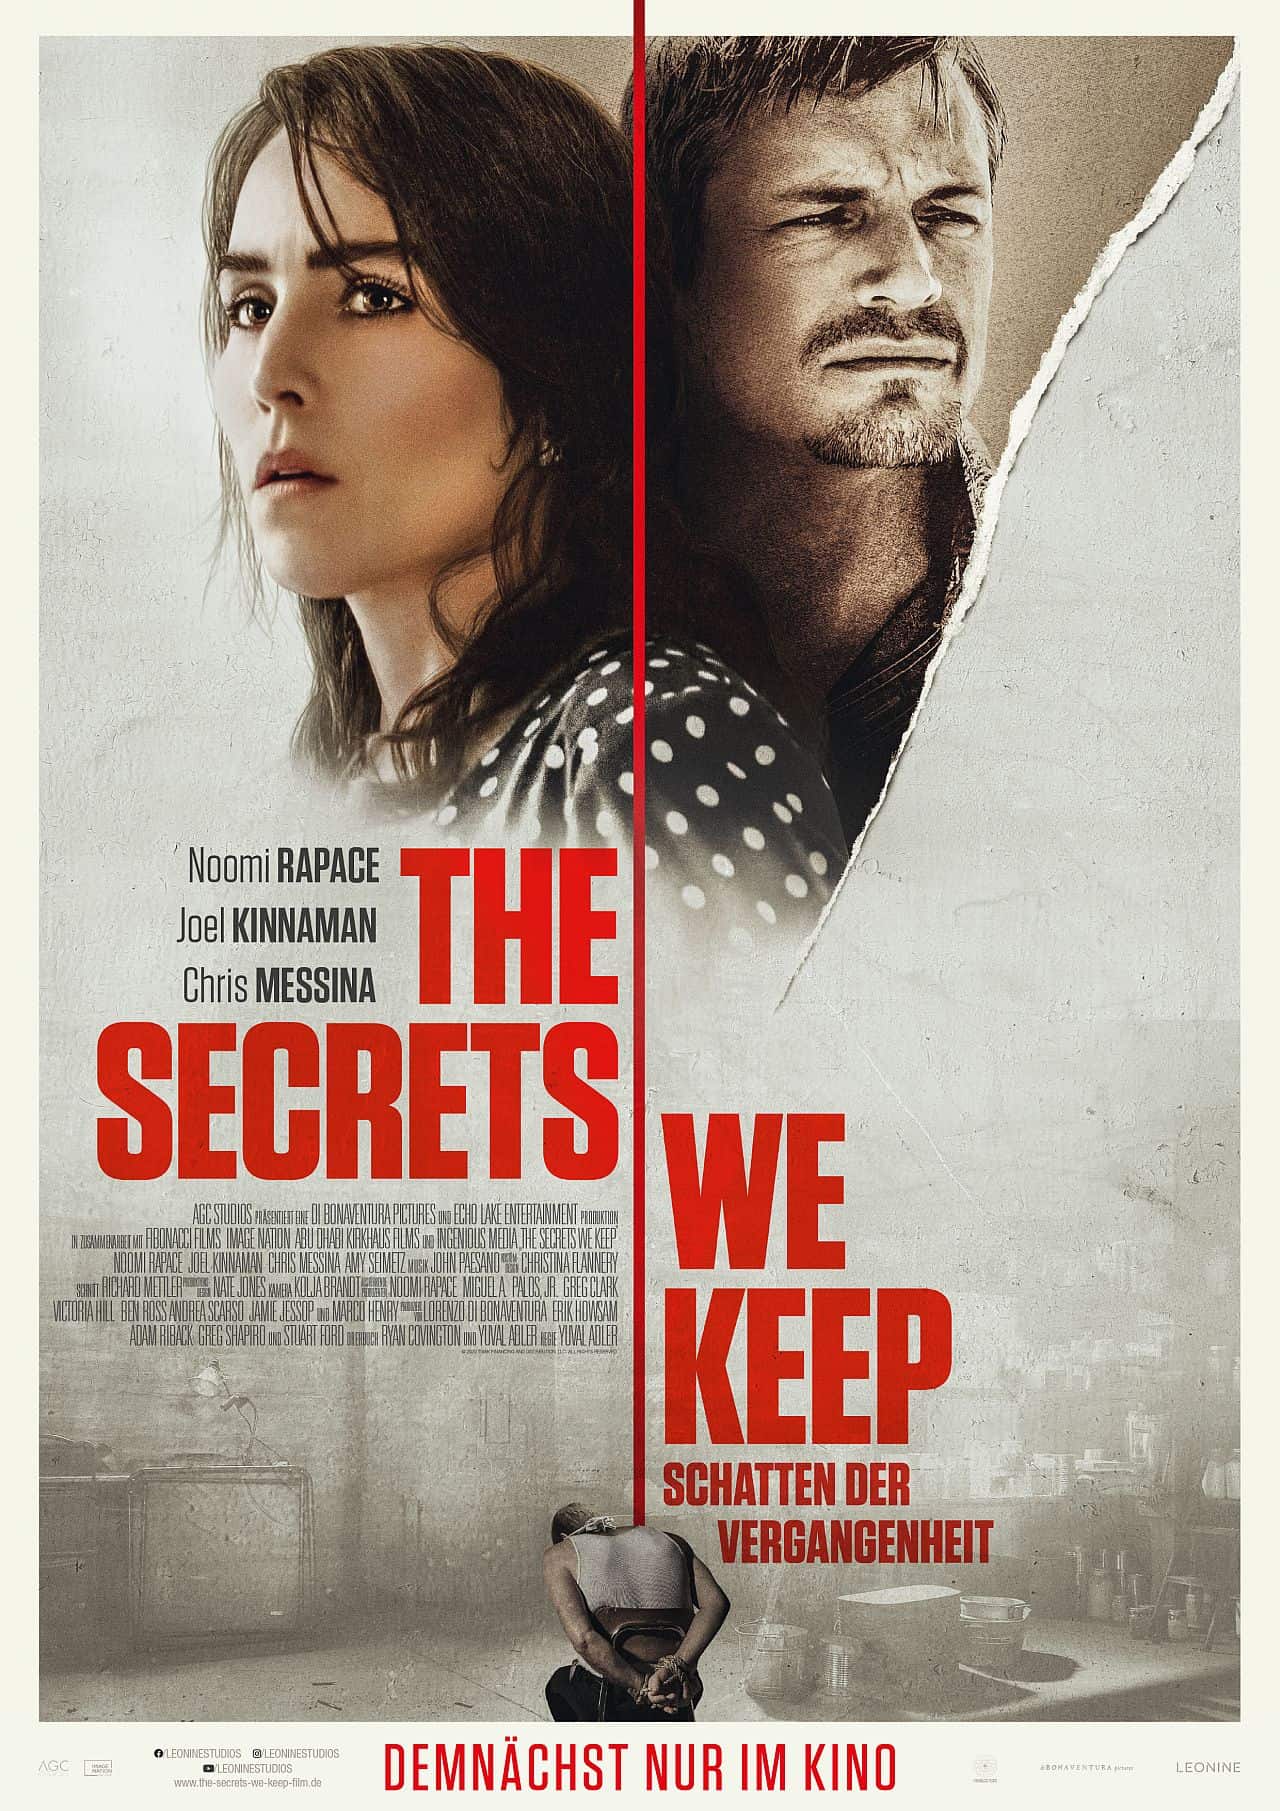 Film Kritik: "The Secrets We Keep" ist ein eindringlicher Thriller mit hoher erzählerischer Dichte